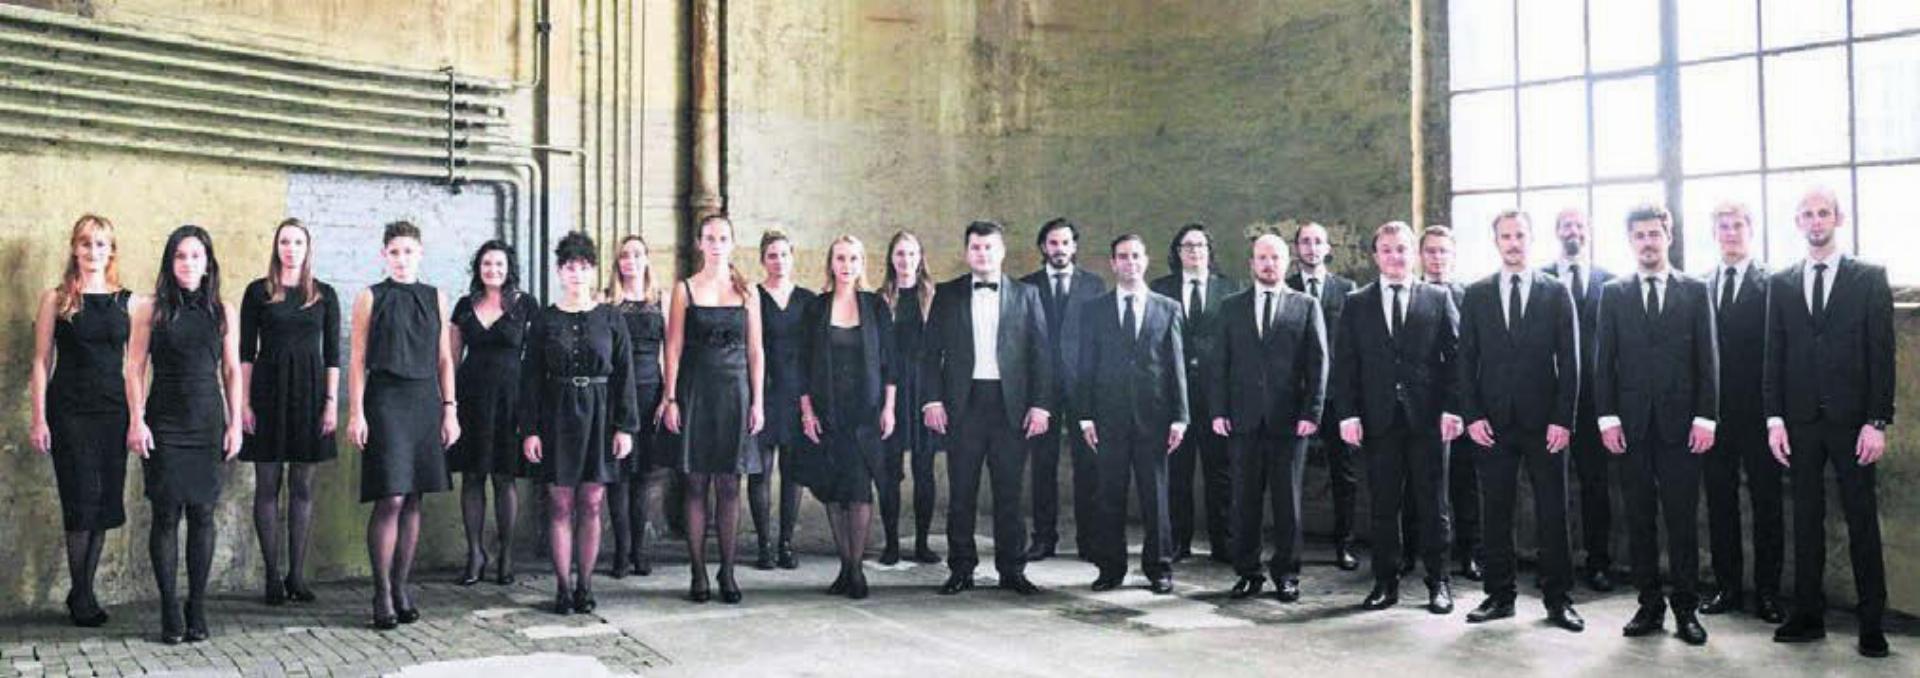 The Zurich Chamber Singers kommen nach Boswil. Bild: zg